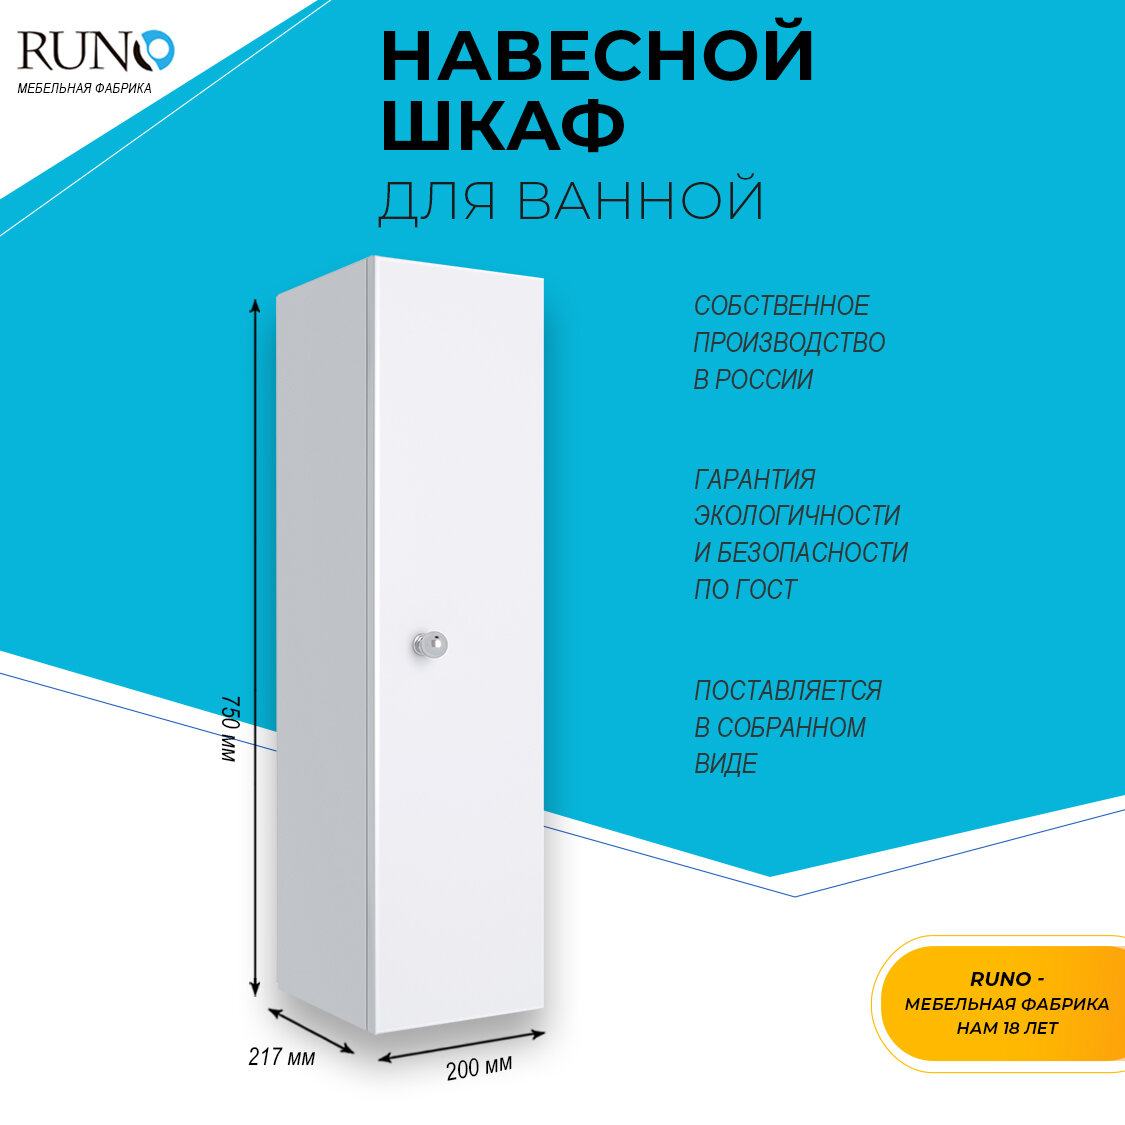 Шкаф для ванной / Runo / Кредо 20 / белый / универсальный / навесной / полка для ванной